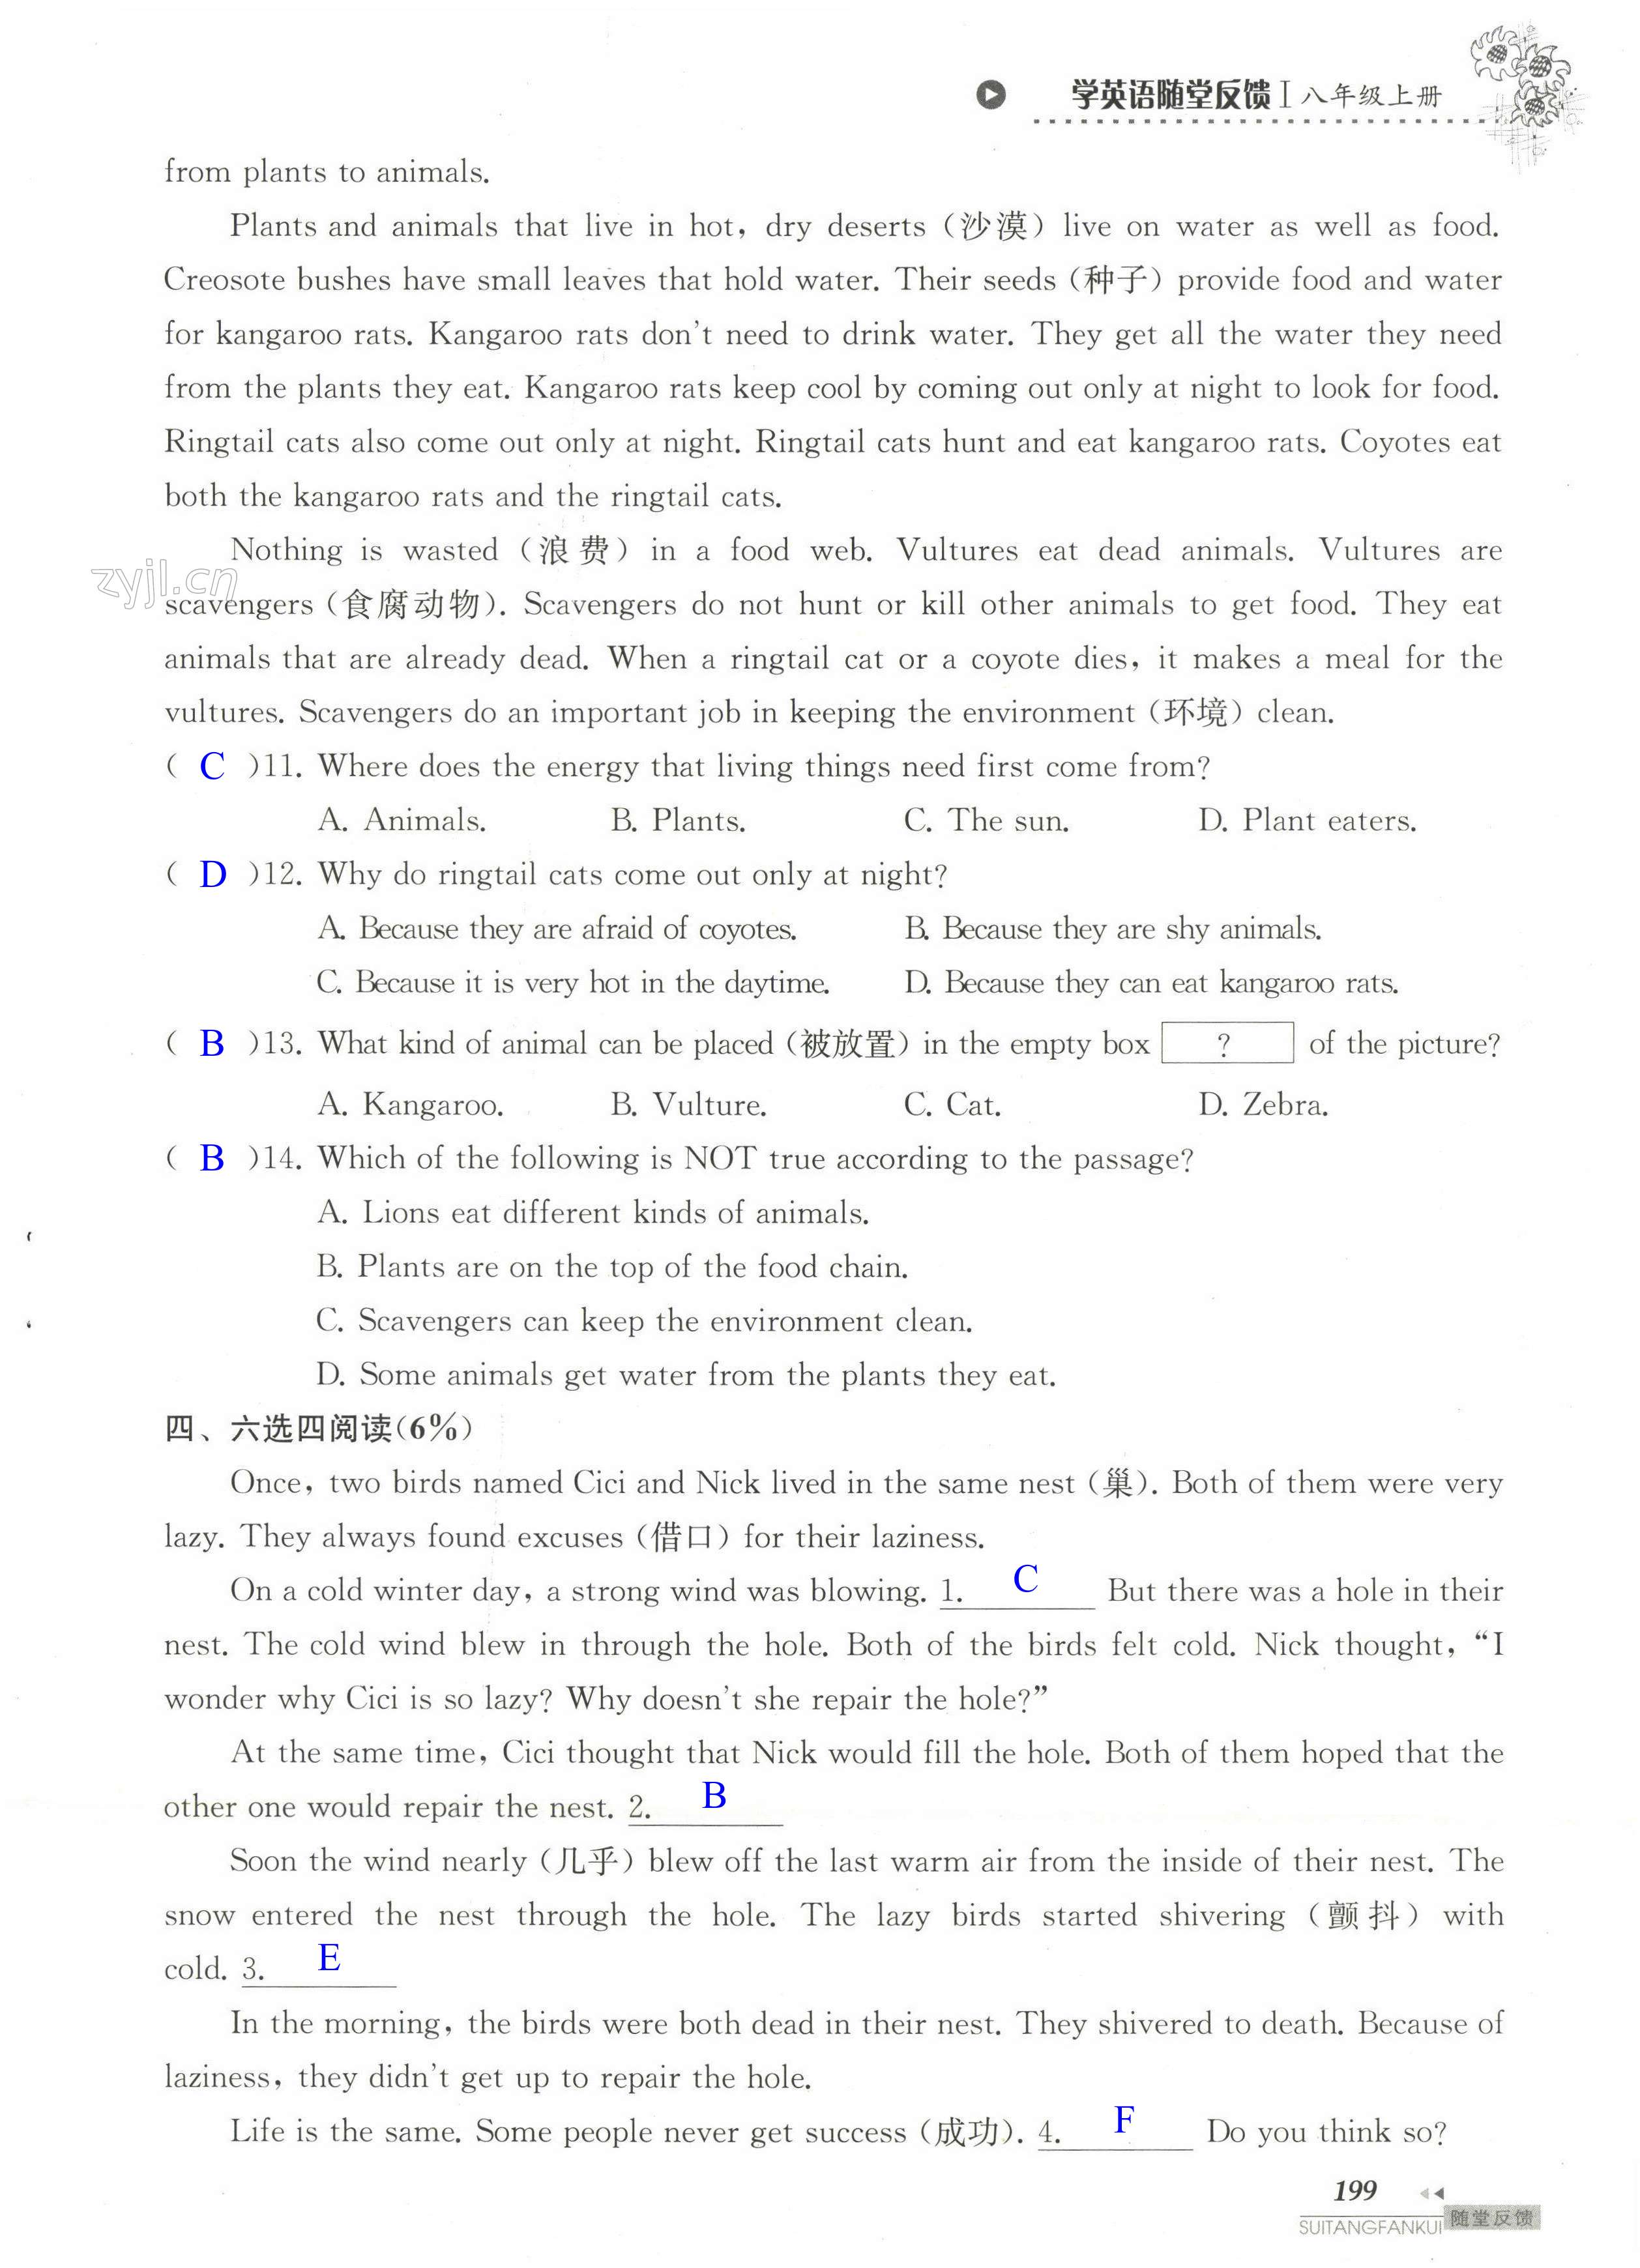 单元综合测试卷 Test for Unit 6 of 8A - 第199页